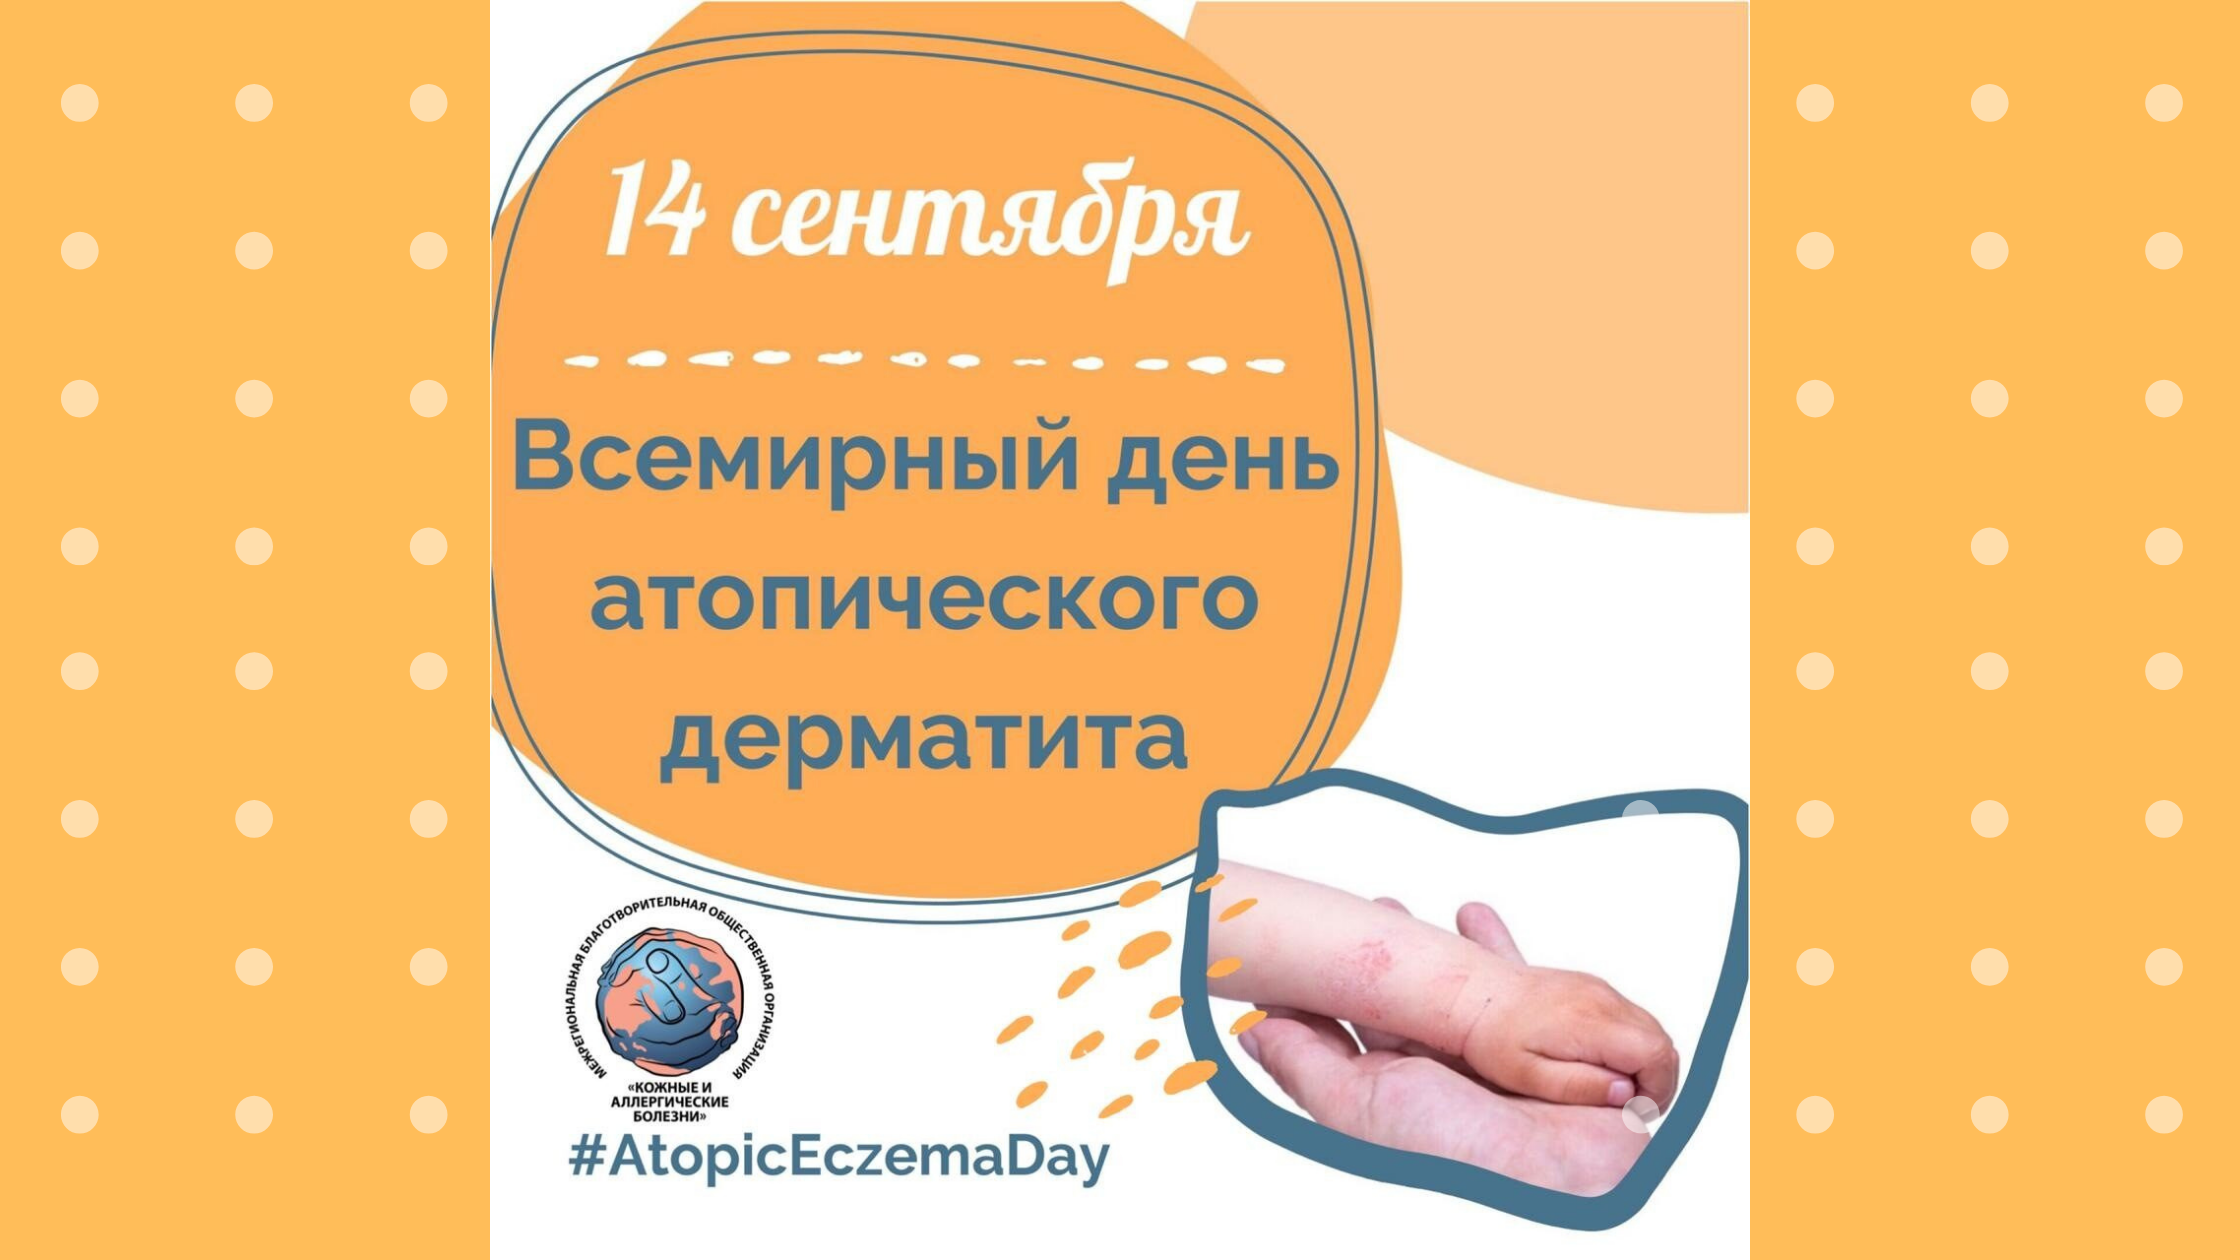 14 сентября - Всемирный день атопического дерматита.